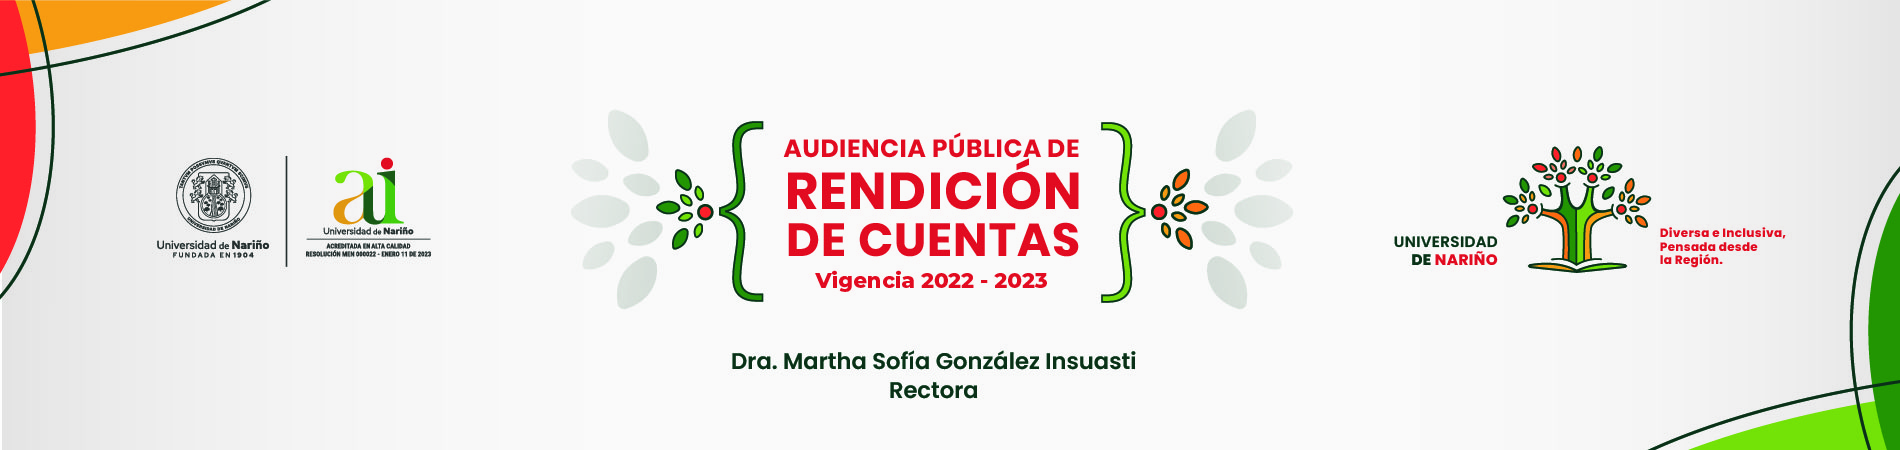 portada-rendicion-2022-05